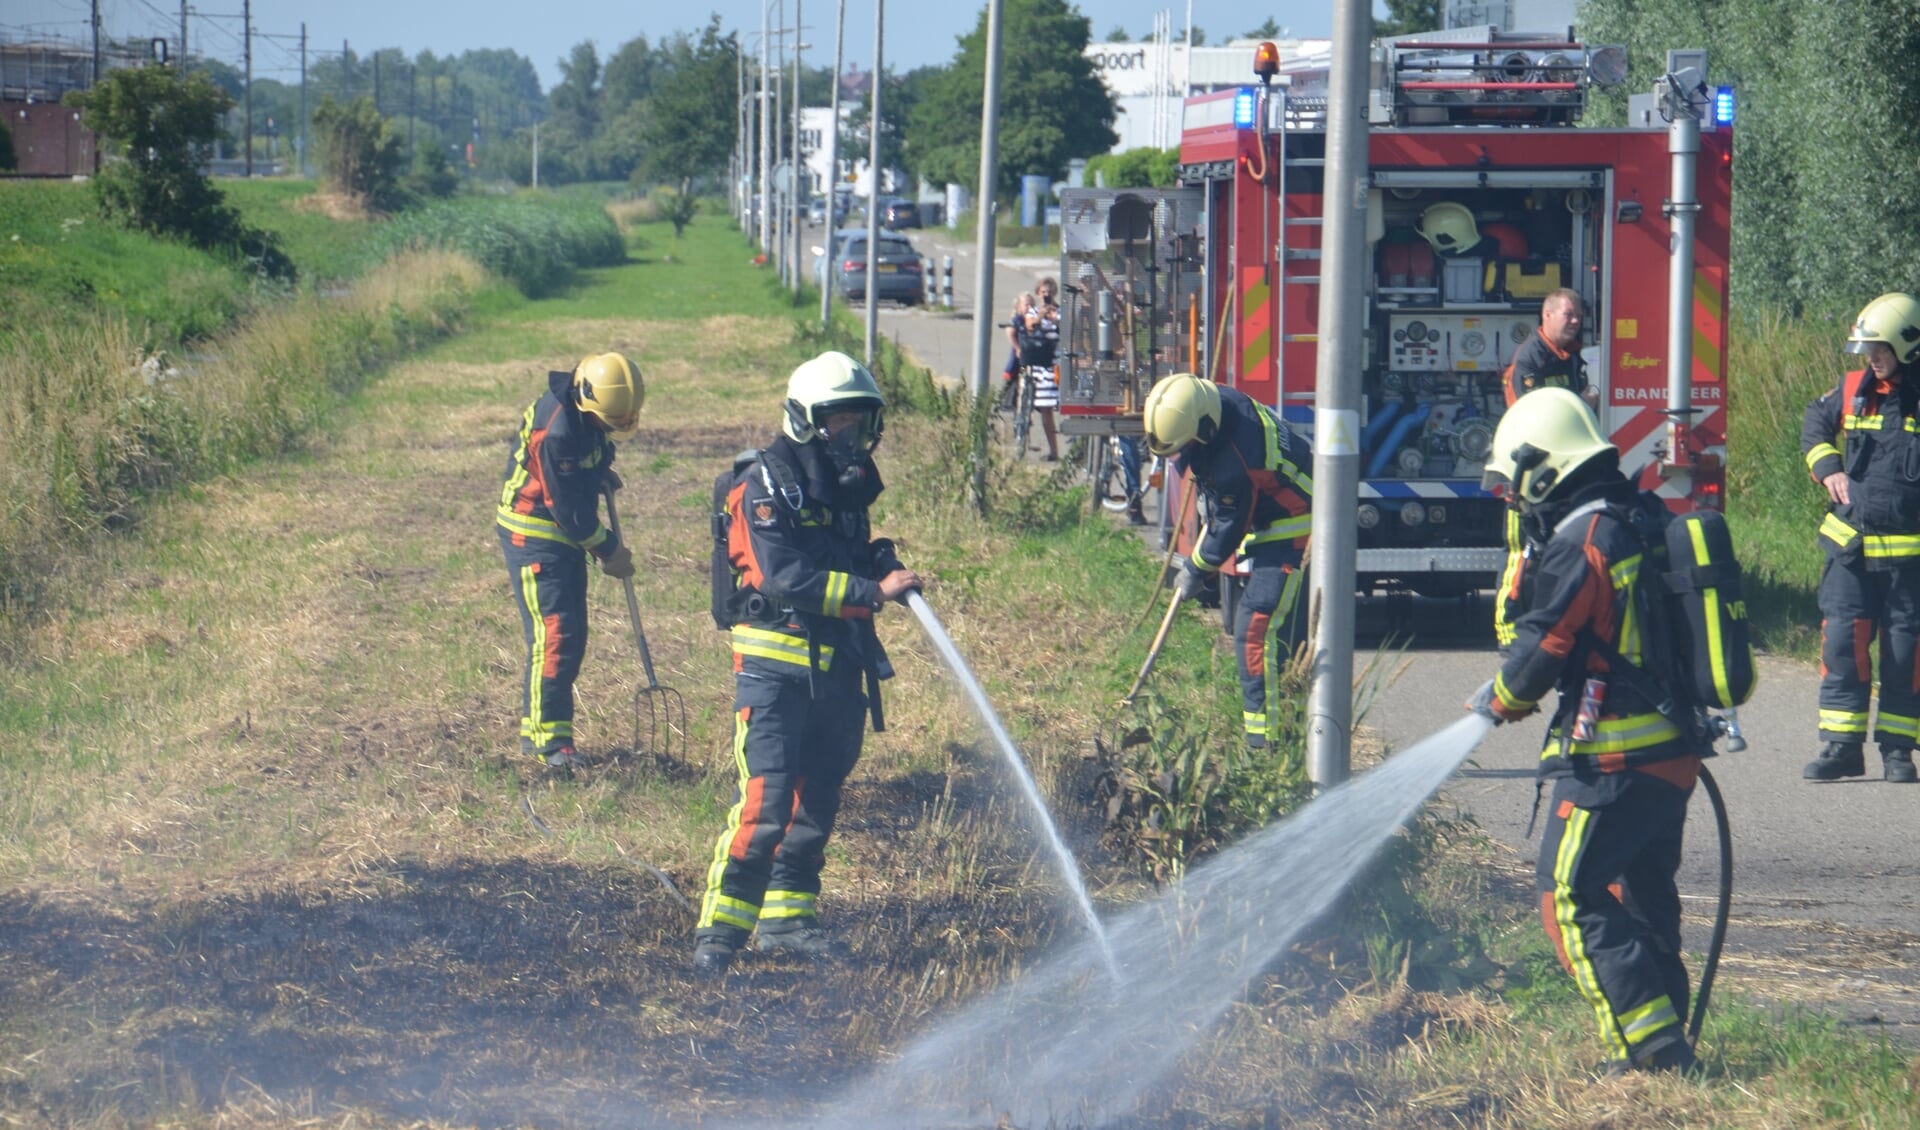 De brandweer rukte deze week twee keer uit voor een bermbrand op bedrijventerrein Coenecoop. (foto: Rob de Jong/112hm.nl)